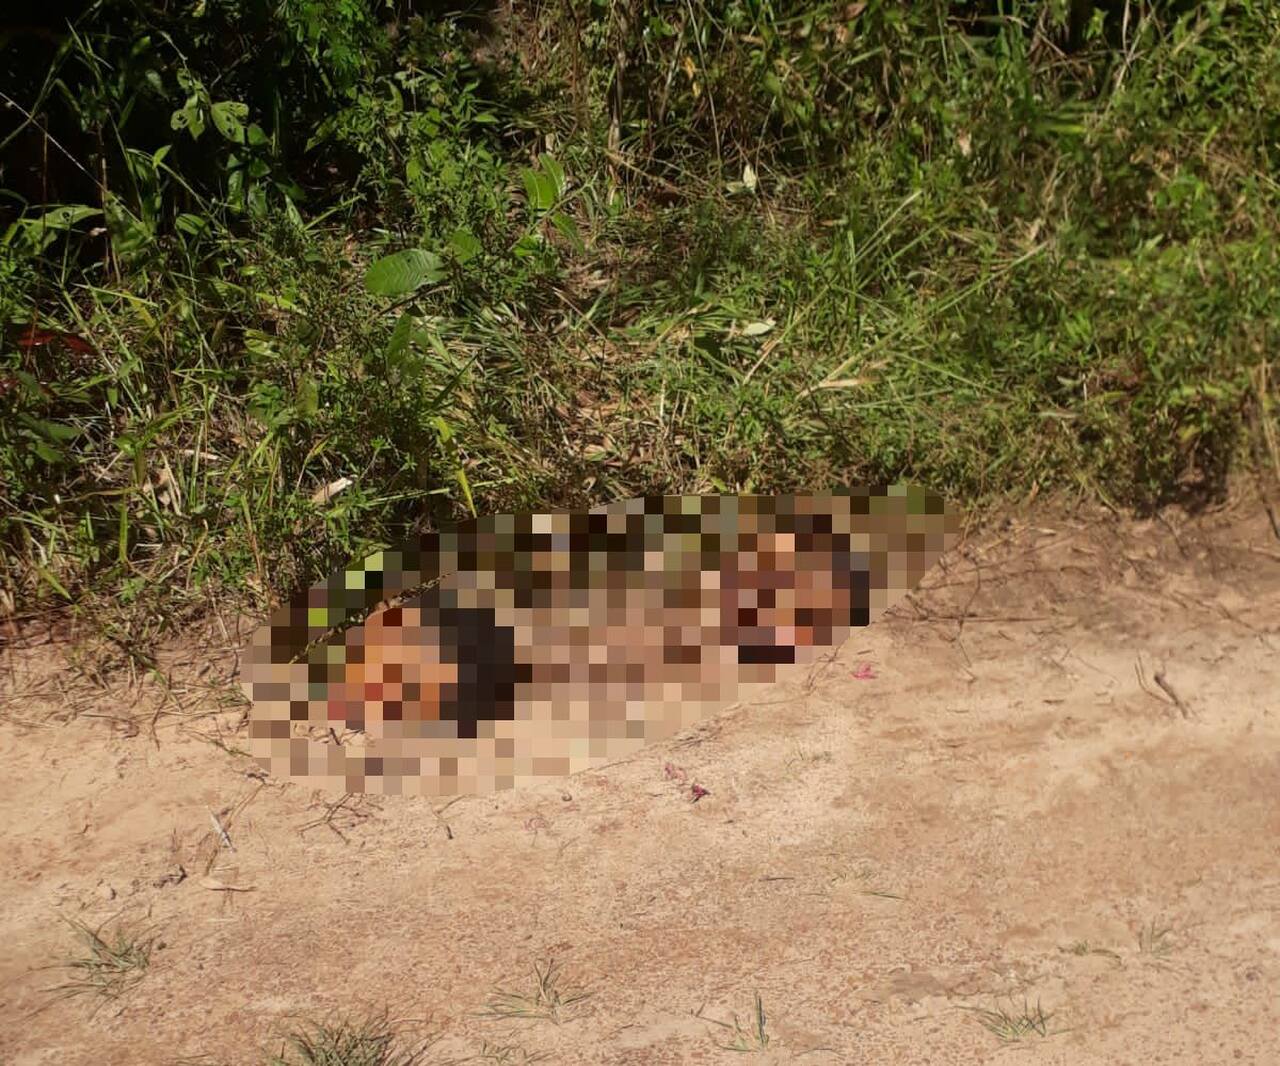 Pesadelo desvendado: Saiba a origem das imagens de homicídios e decapitações que foram compartilhadas nesta segunda (26) em grupos de WhatsApp de Palmas